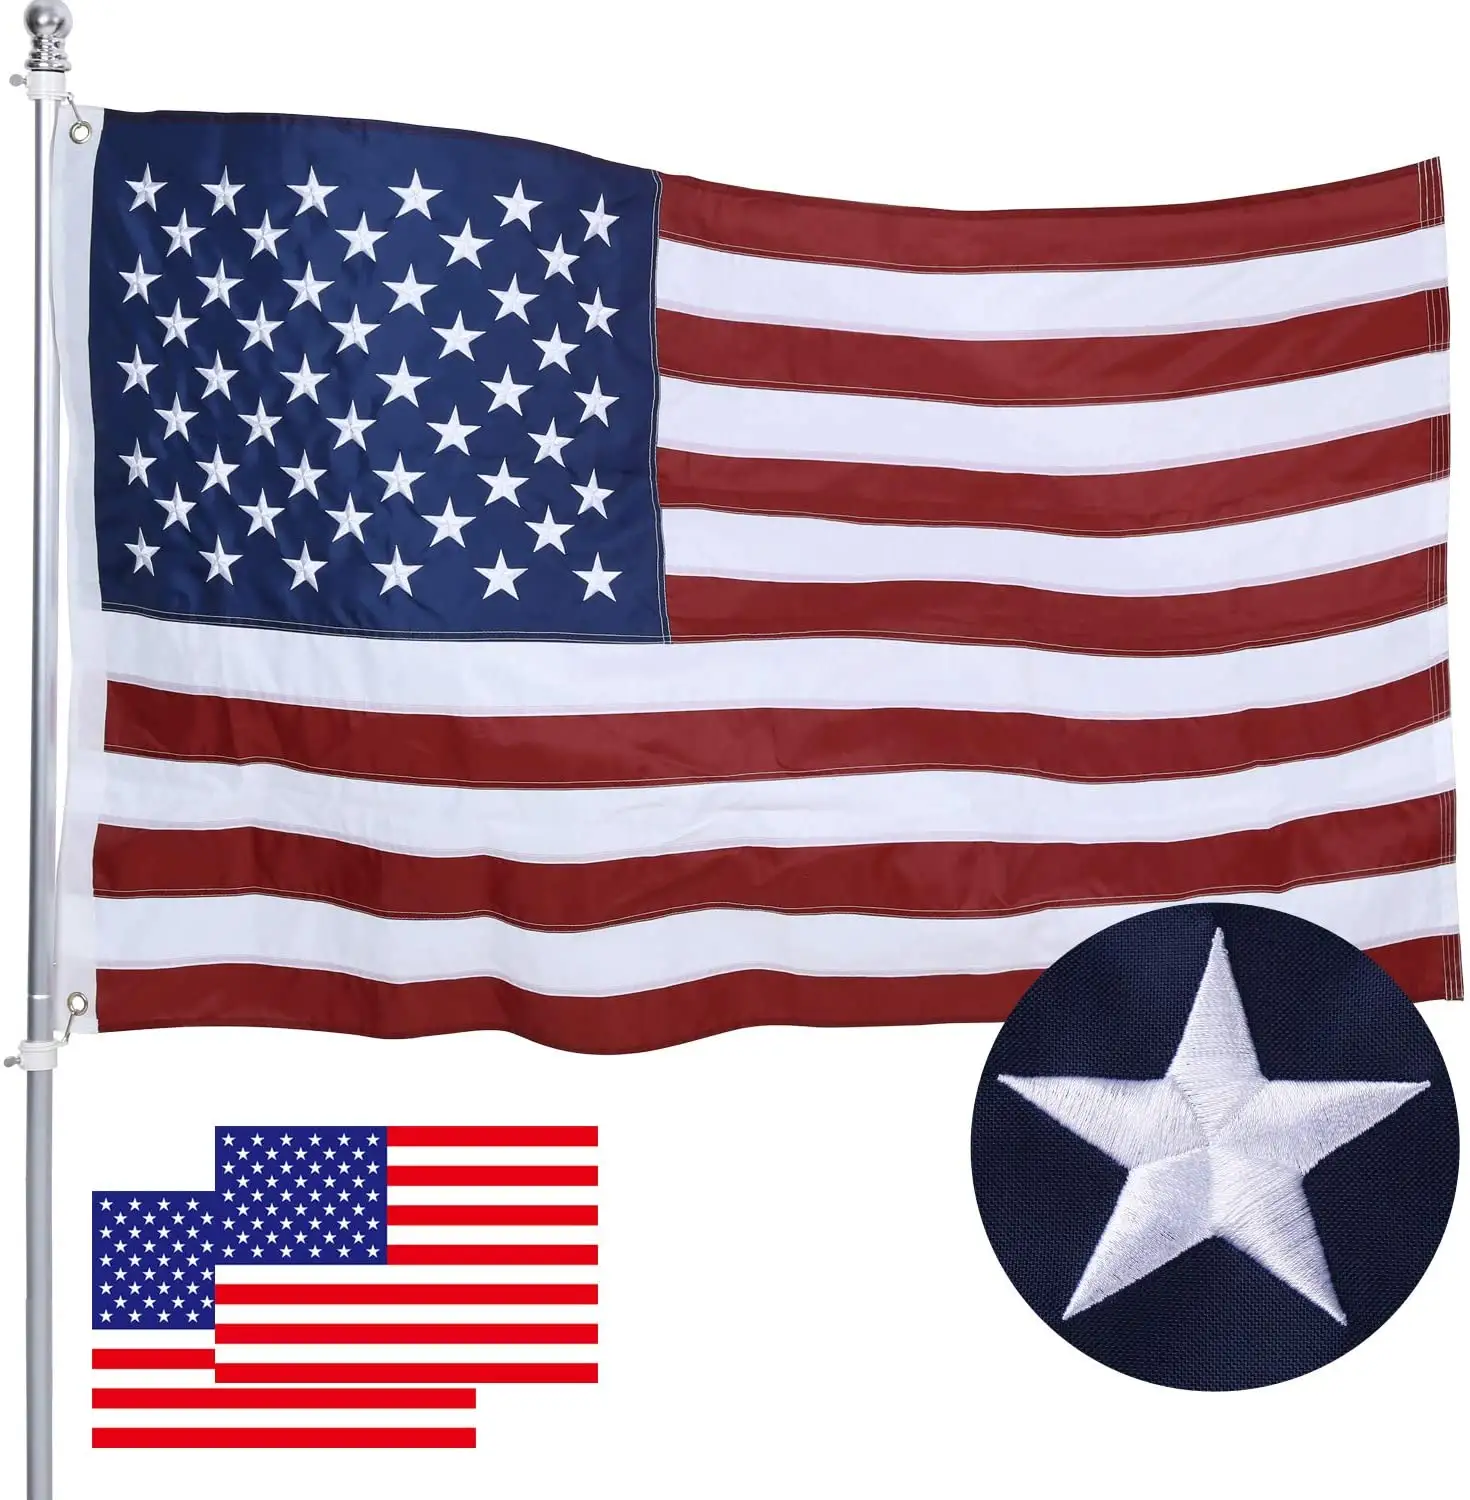 Banderas americanas de 3x5 para exteriores, Bandera de EE. UU., EE. UU., de lujo, bordadas, duraderas, de Color vivo, cosidas a rayas, arandelas de latón